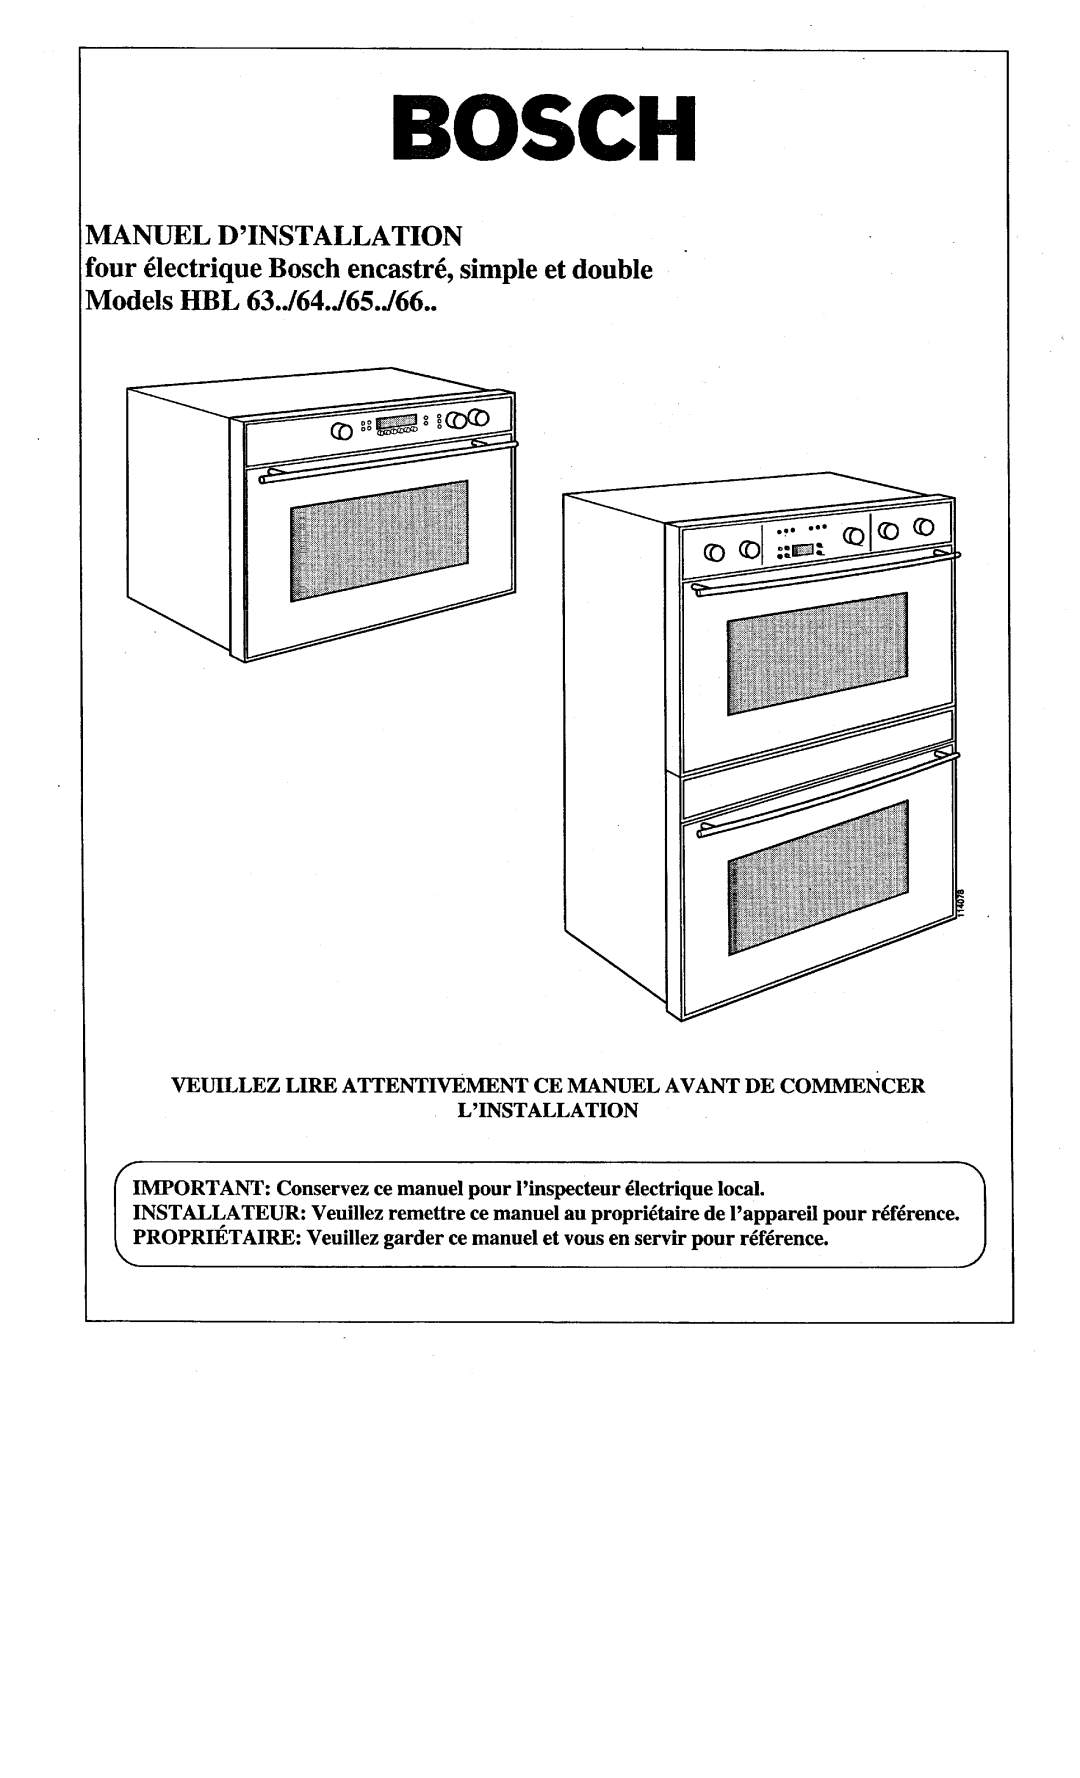 Bosch Appliances HBL 66, HBL 64, 122, HBL 63, HBL 65, Double Oven manual 